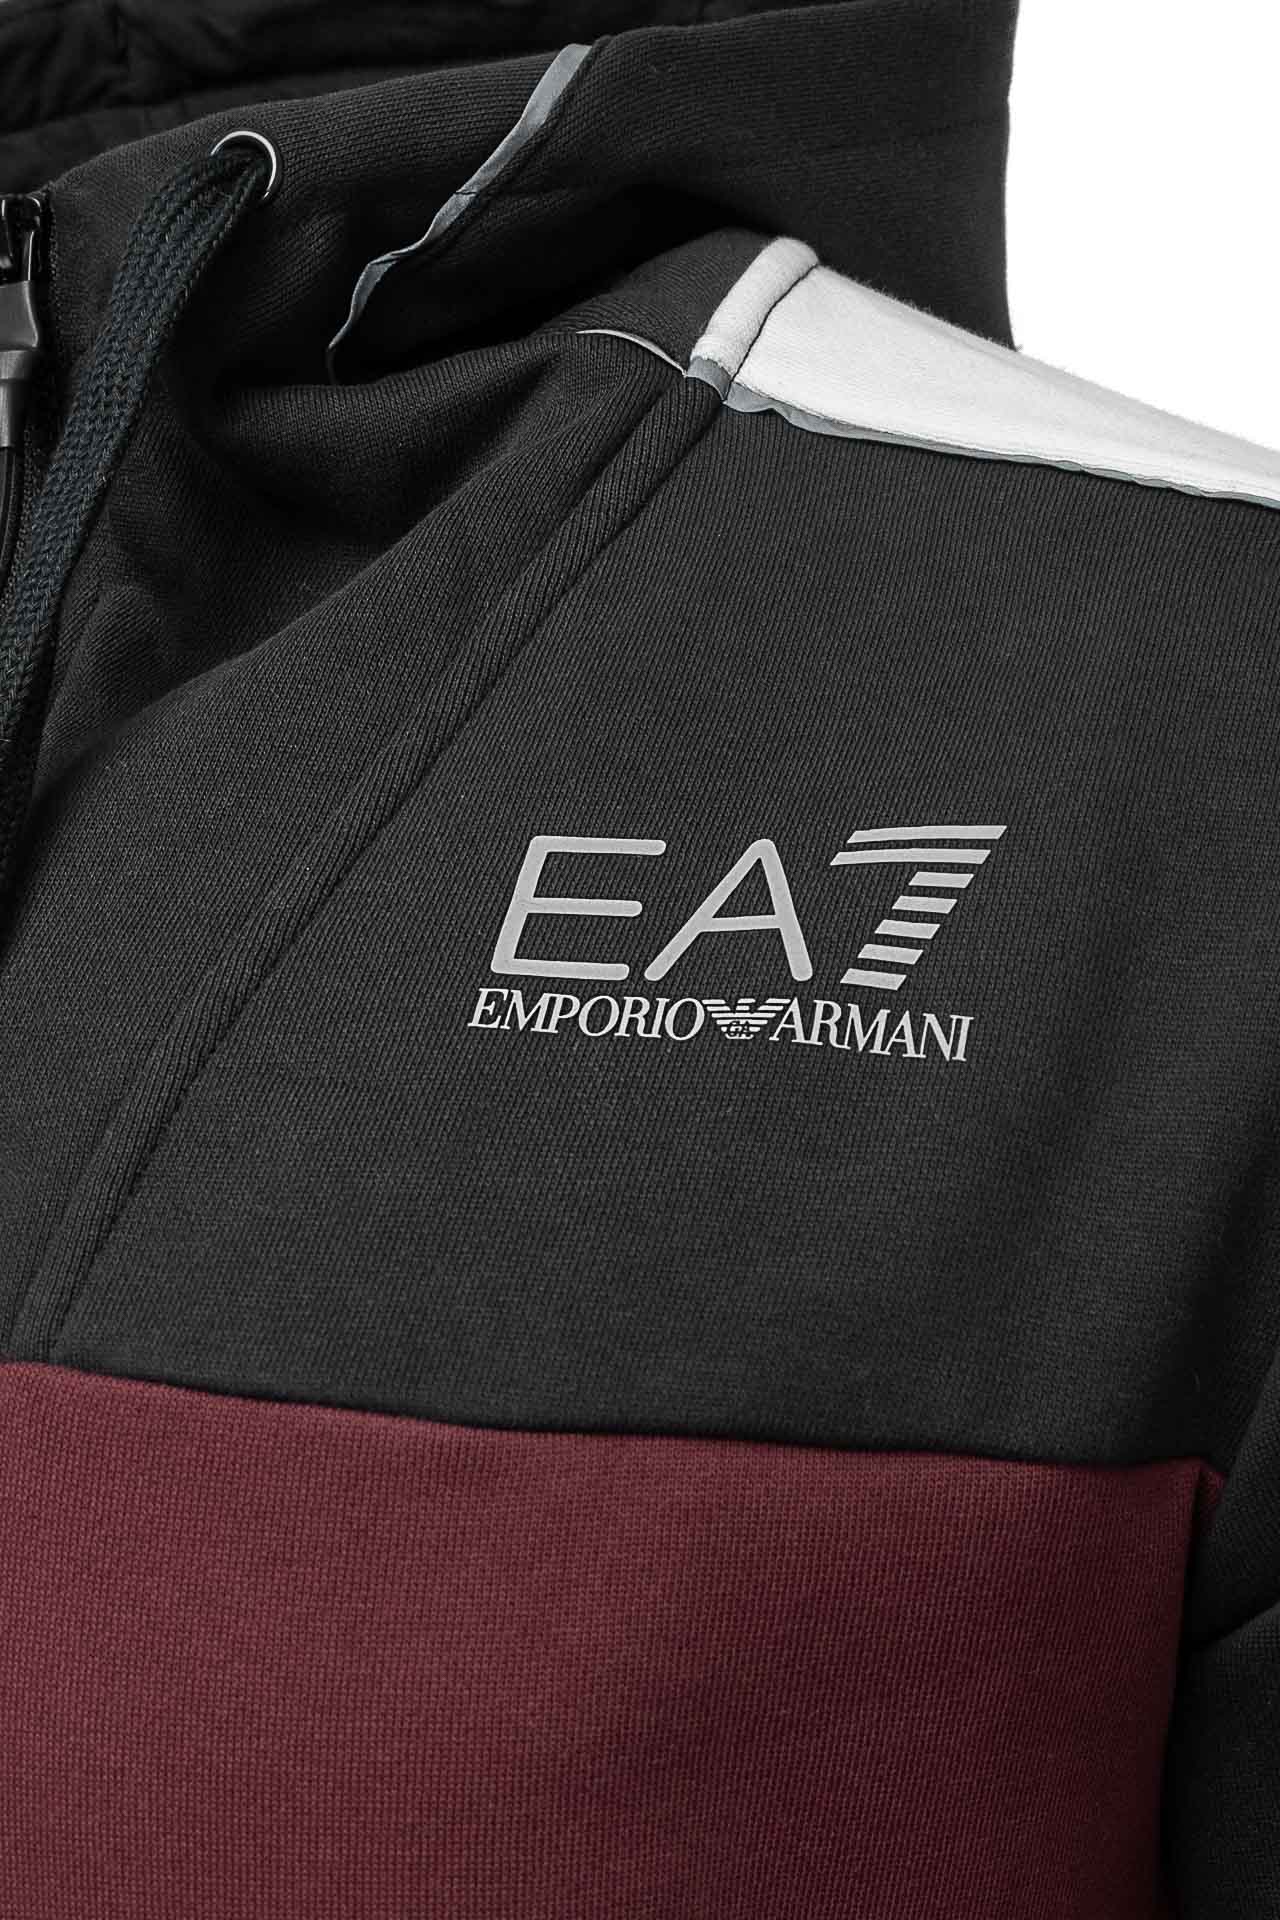 Bluza męska EA7 Emporio Armani 6LPM15-PJ07Z-1495